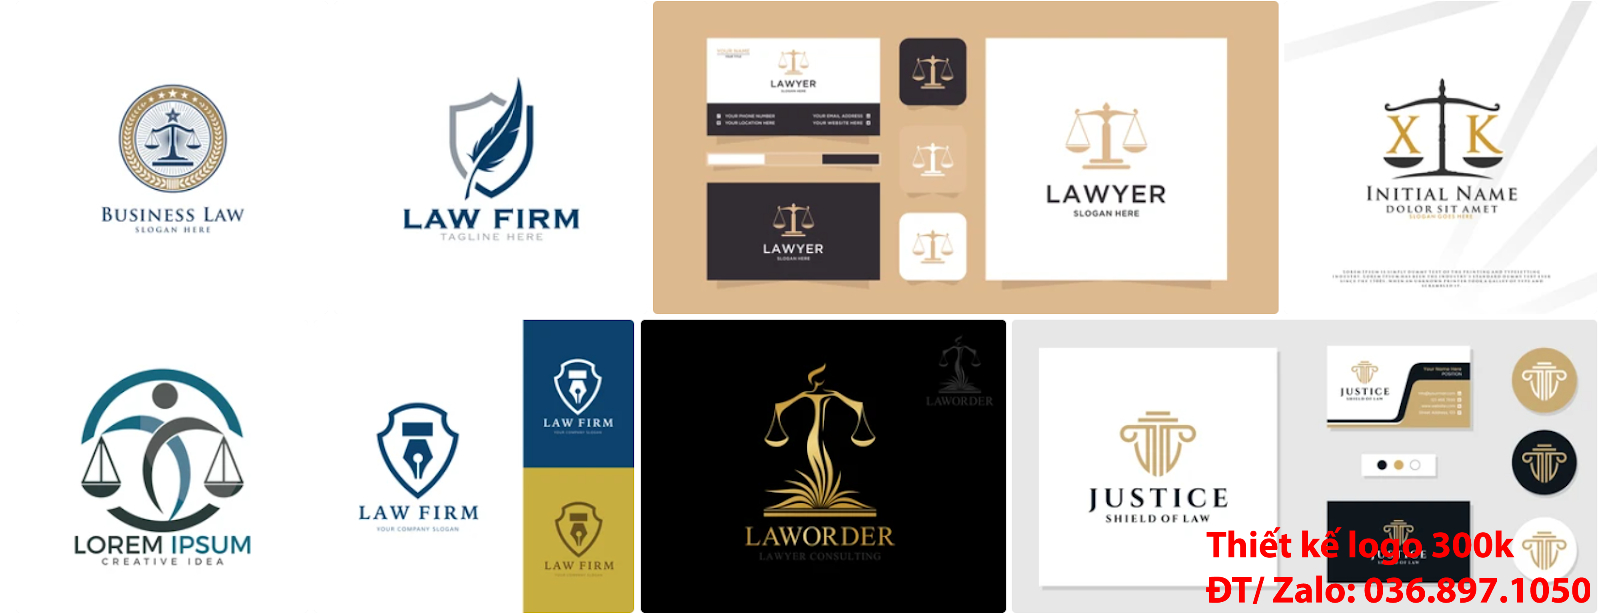 Dịch vụ cung cấp các Mẫu Thiết Kế Logo công ty luật sư đẹp giá rẻ chuyên nghiệp 500k